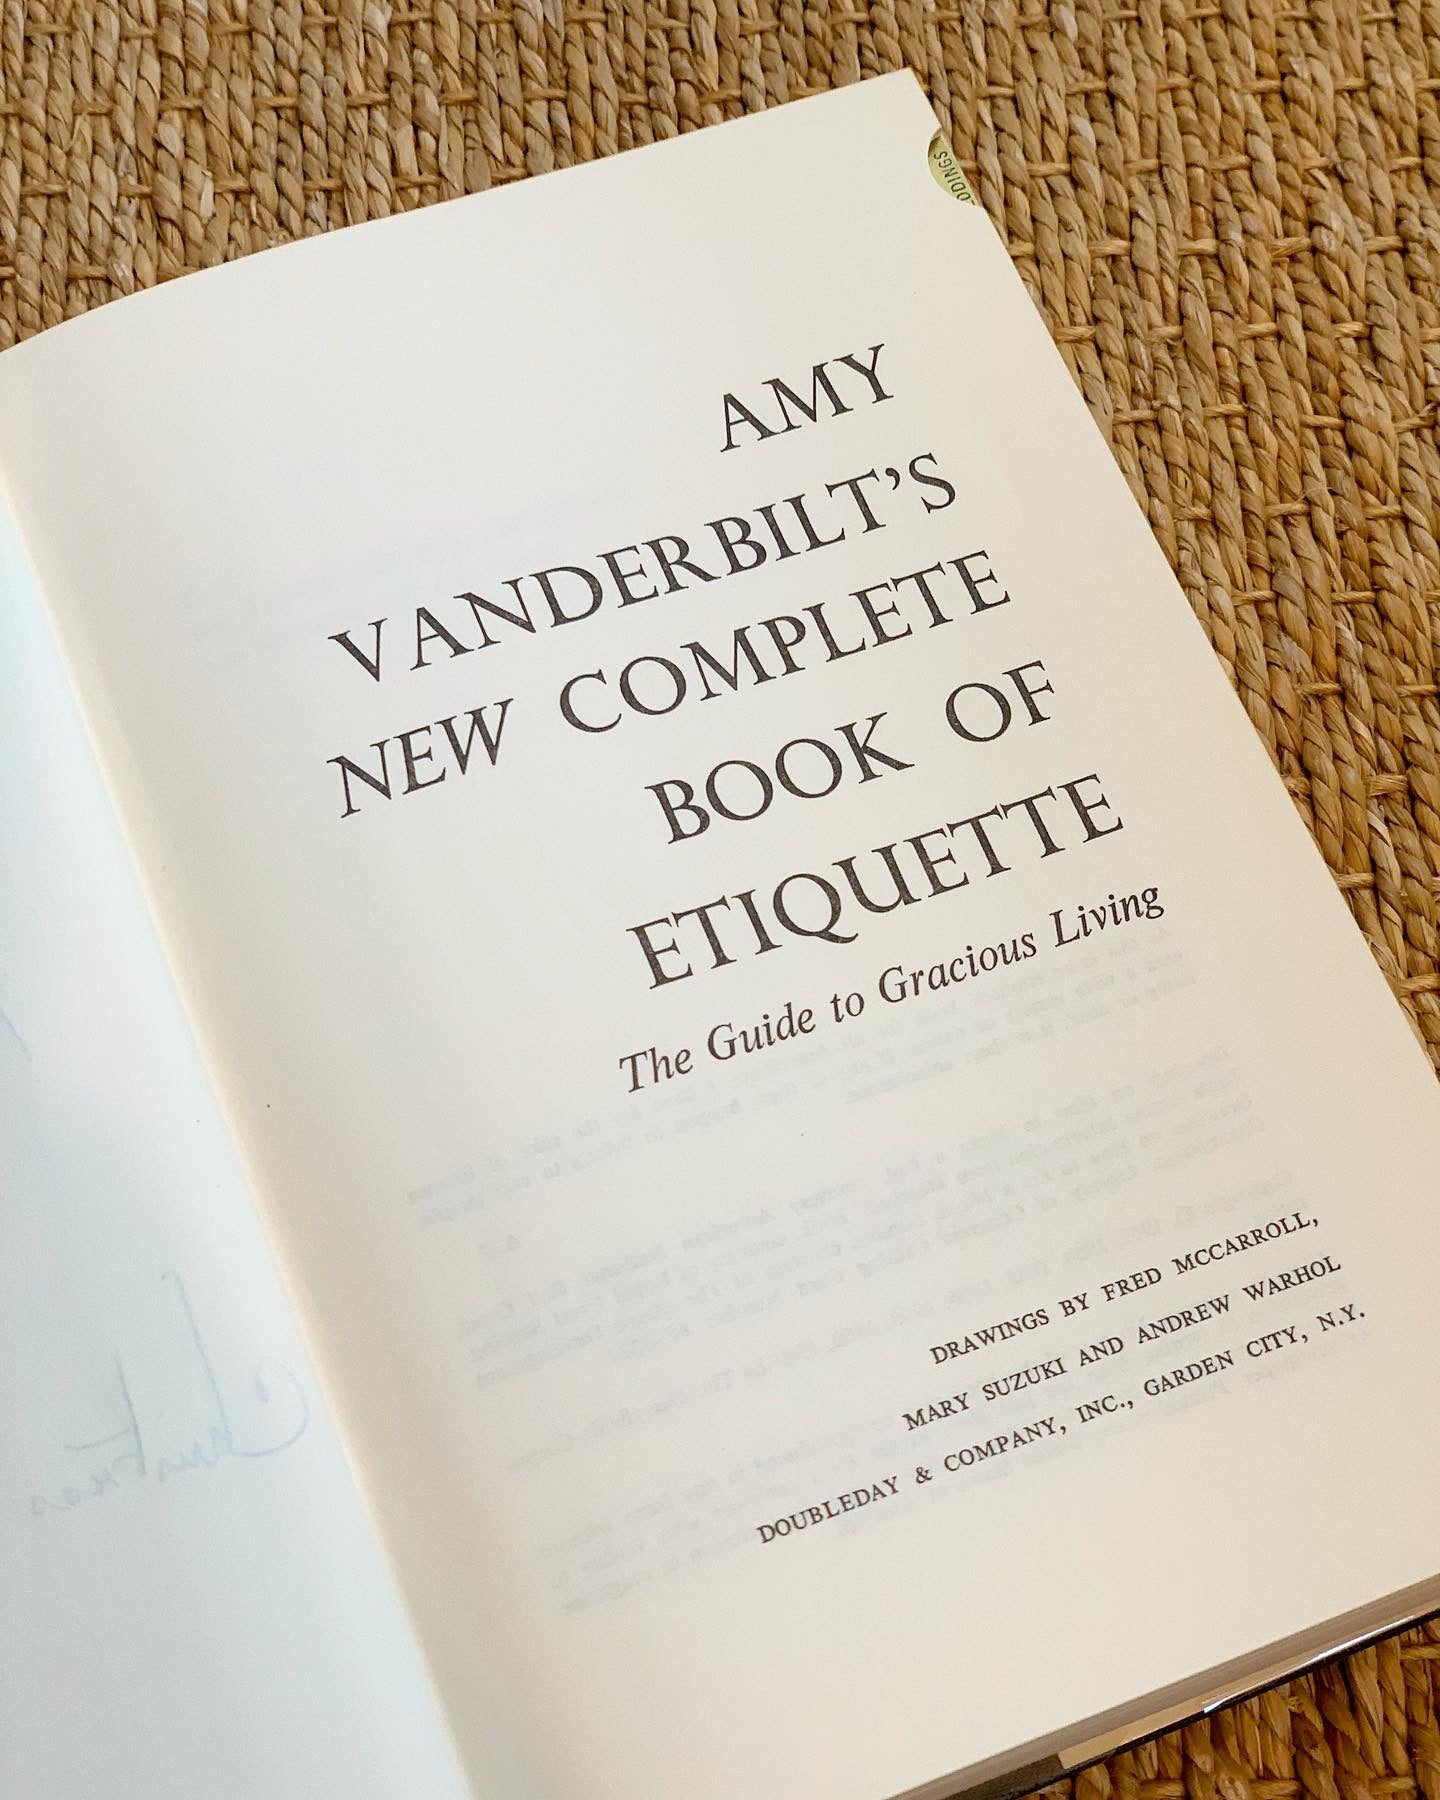 Amy Vanderbilt's New Complete Book of Etiquette (1967)